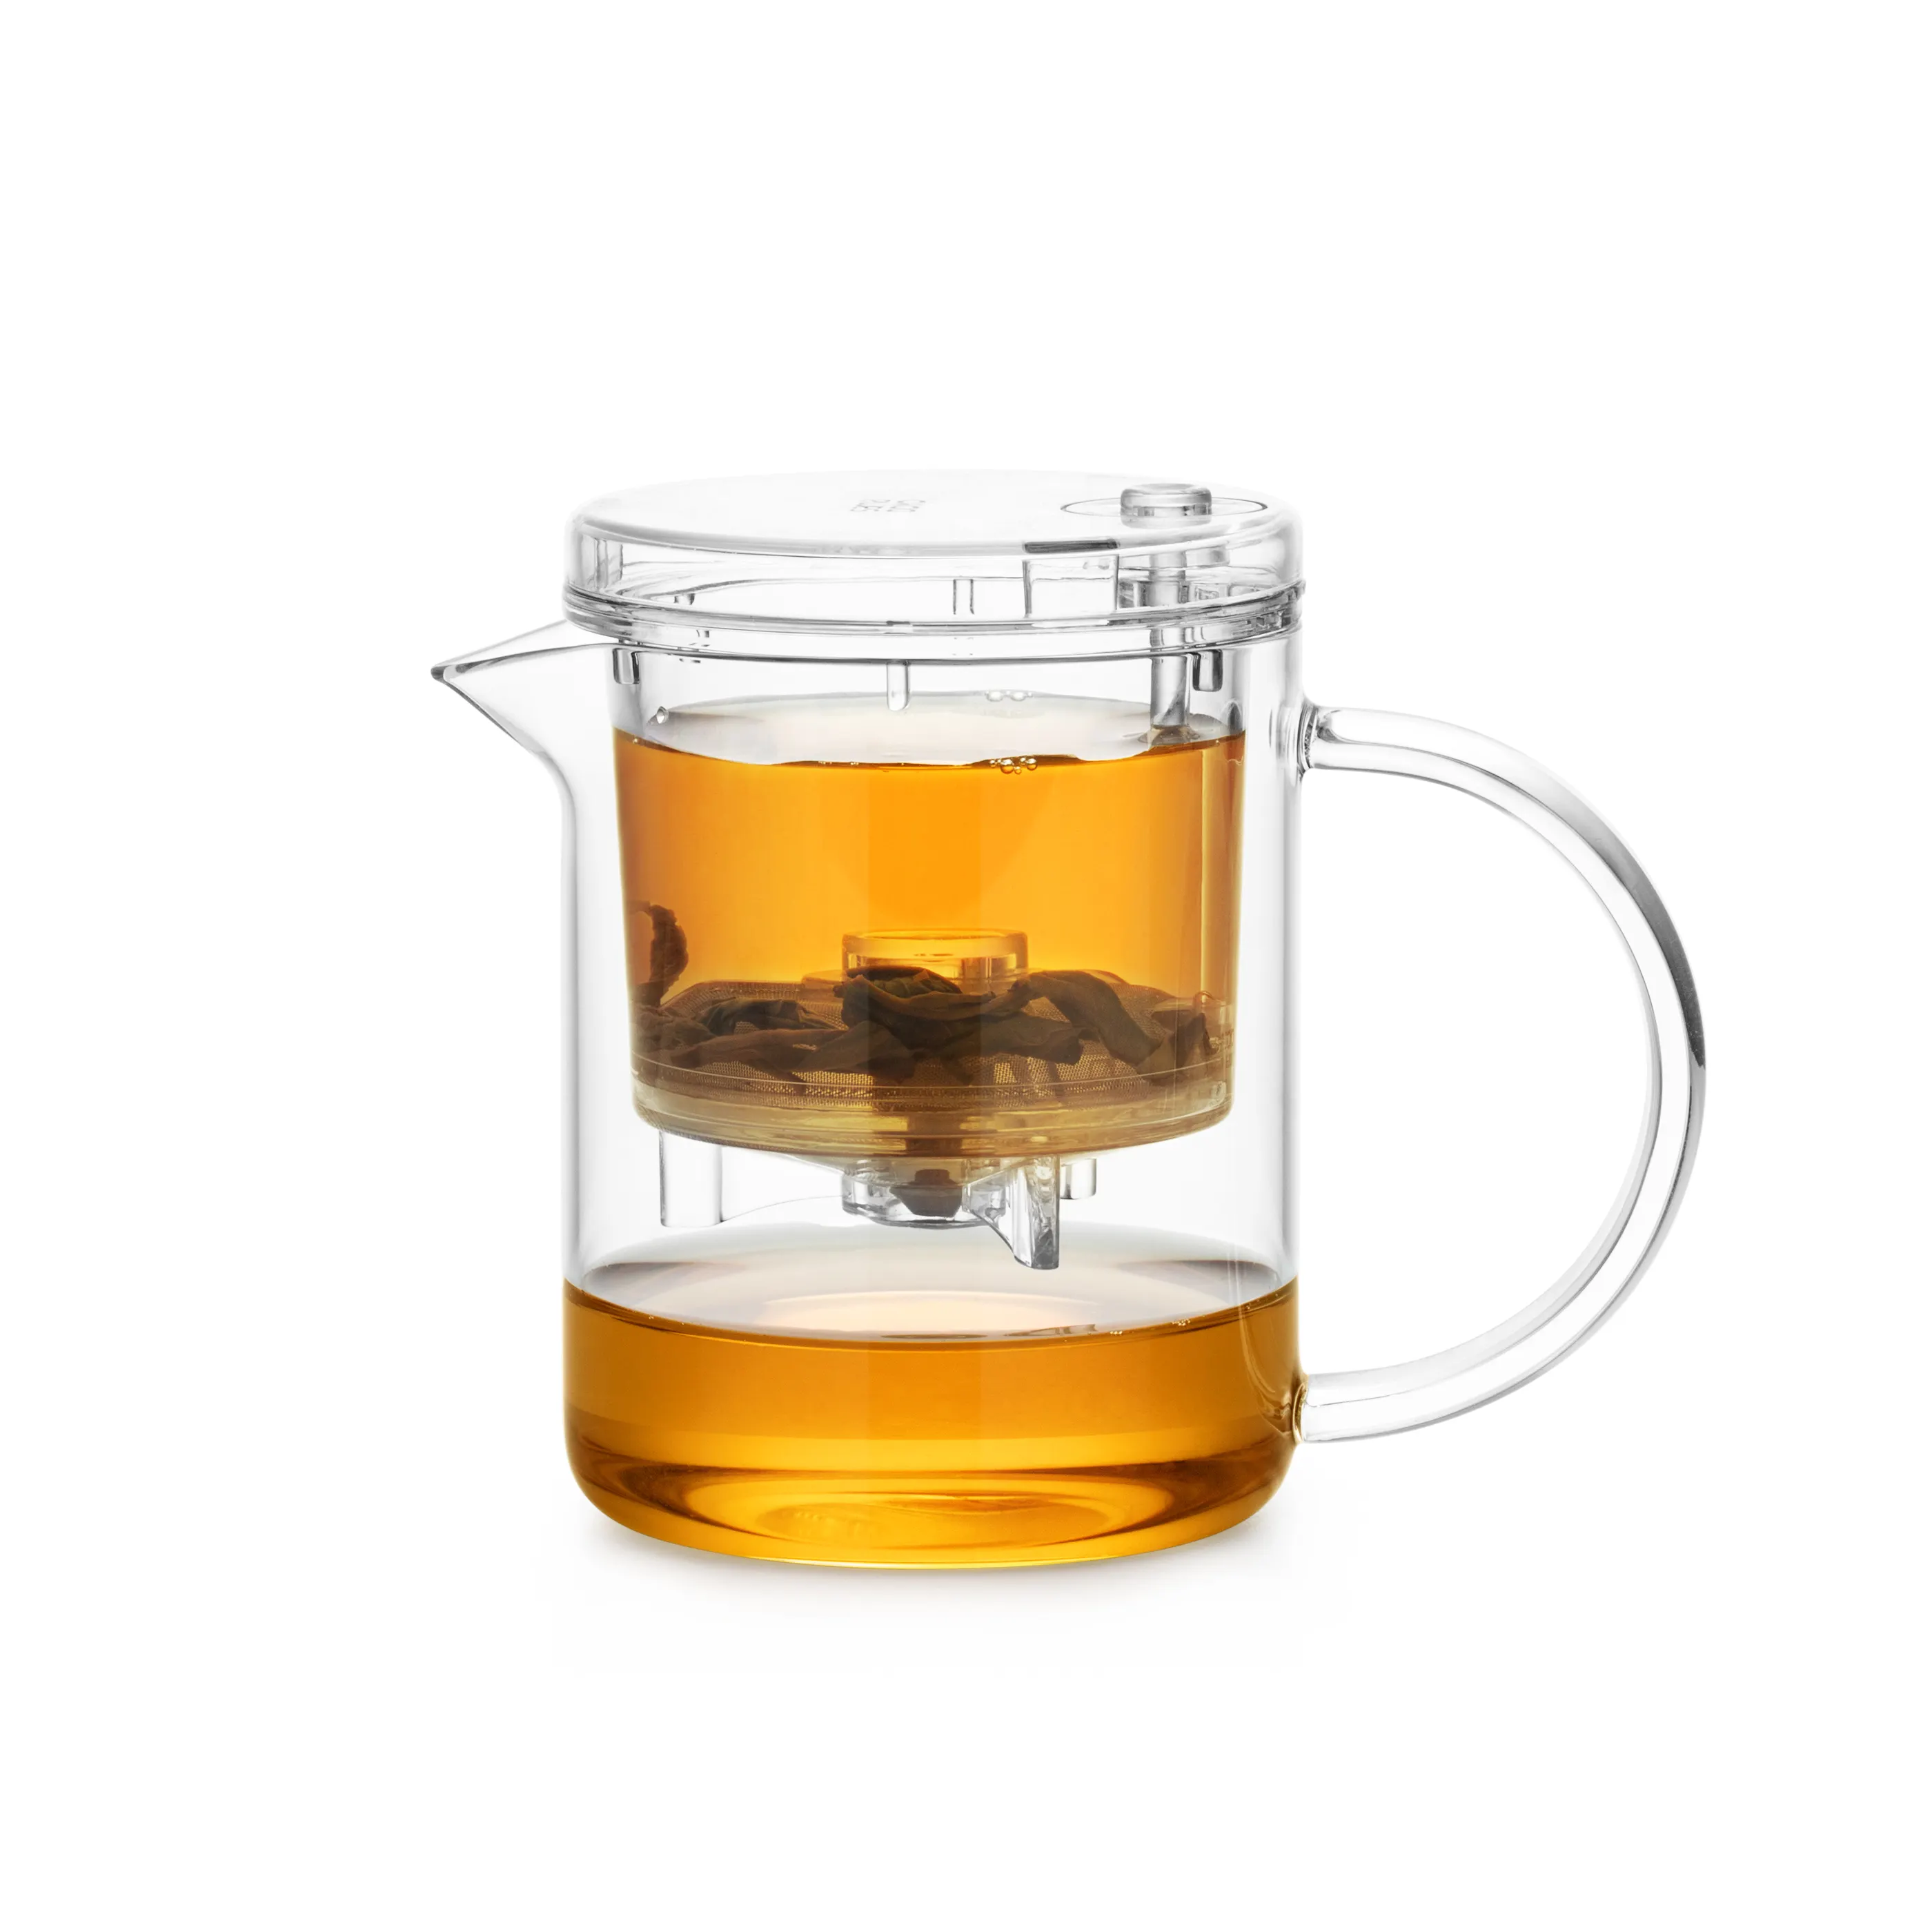 Çıkarılabilir demlik ile sıcak satış borosilikat cam çay demliği isıya dayanıklı cam su ısıtıcısı çaydanlık